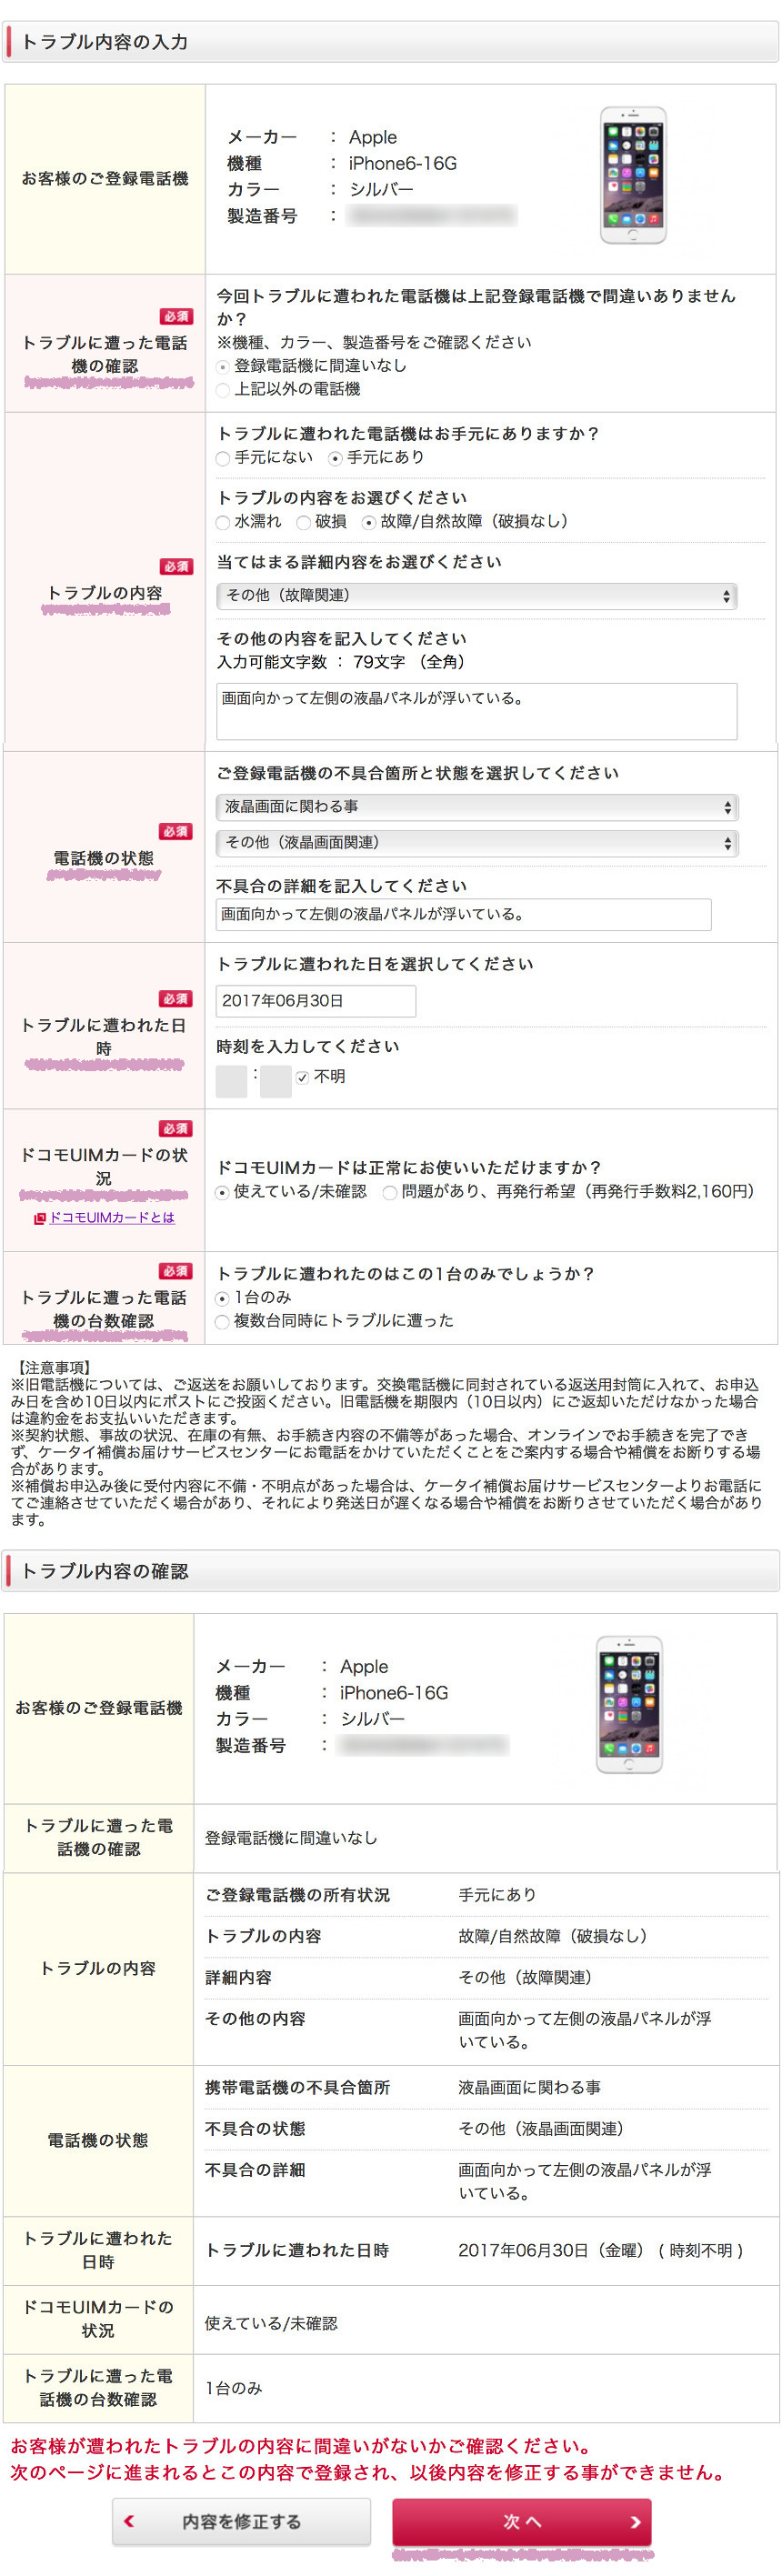 Iphone Ipad ケータイ補償サービスをmy Docomoで申し込む Webデザインラボ